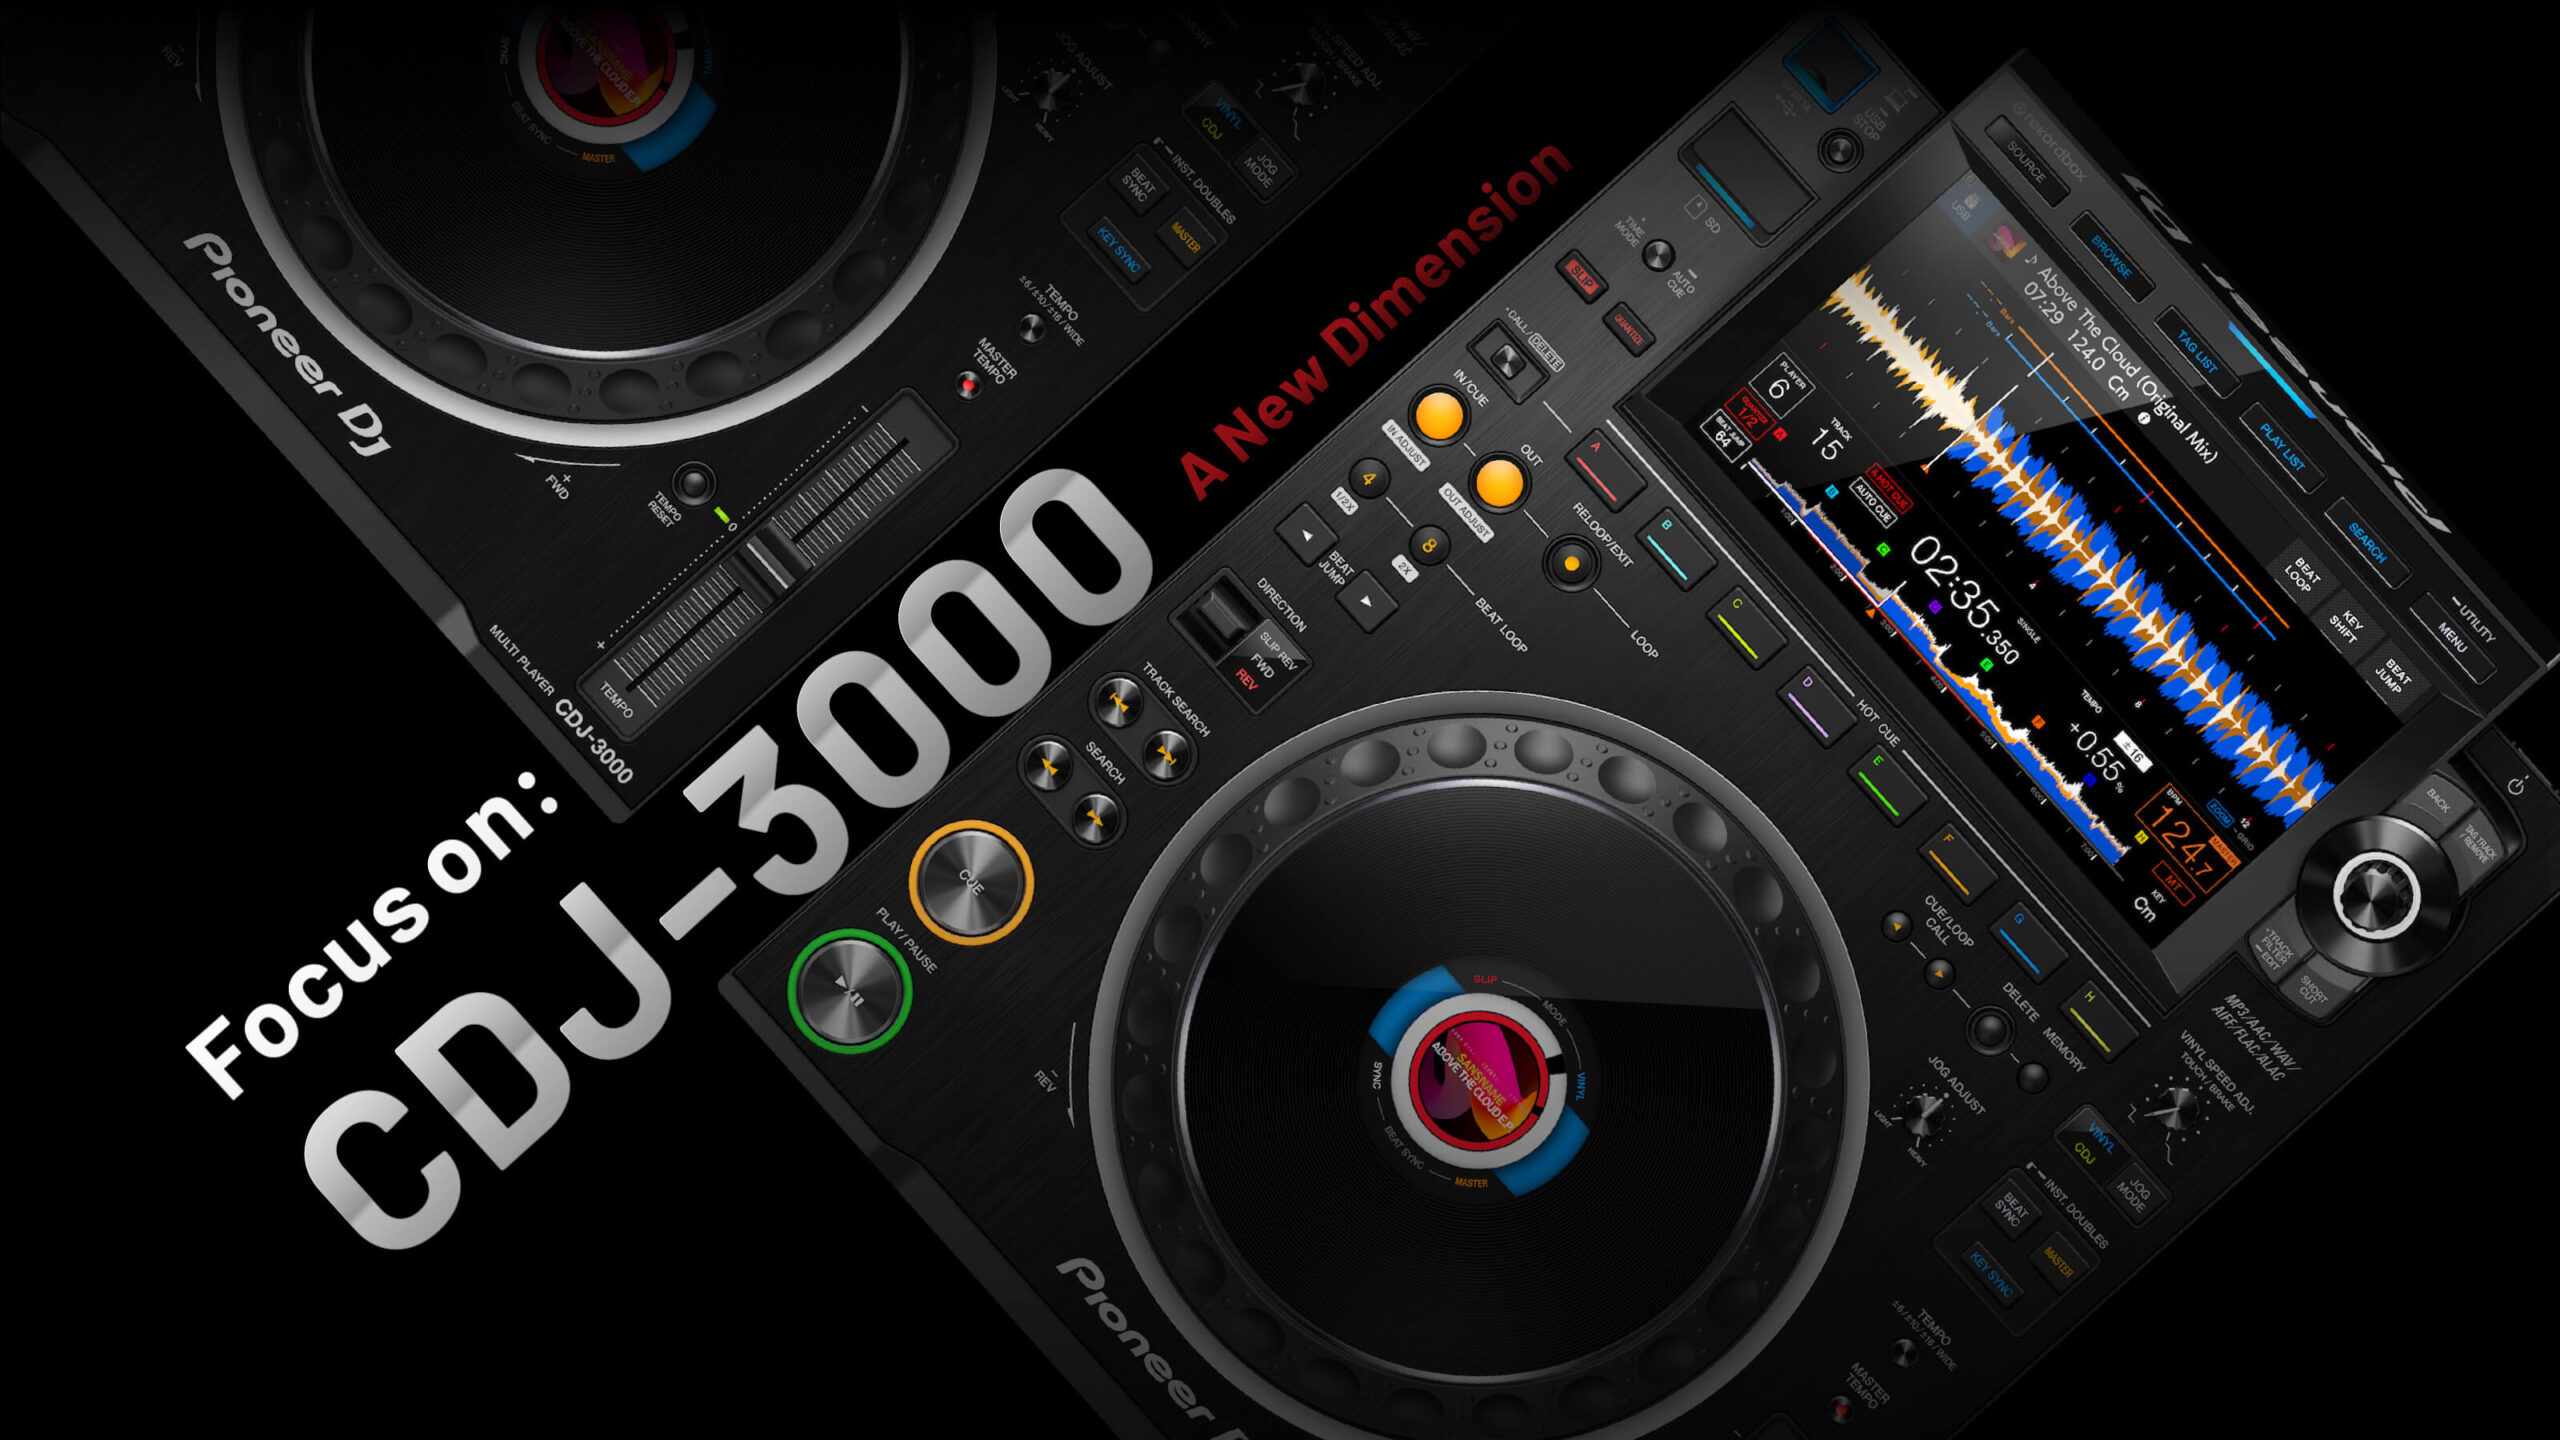 Focus on: Pioneer DJ CDJ-3000